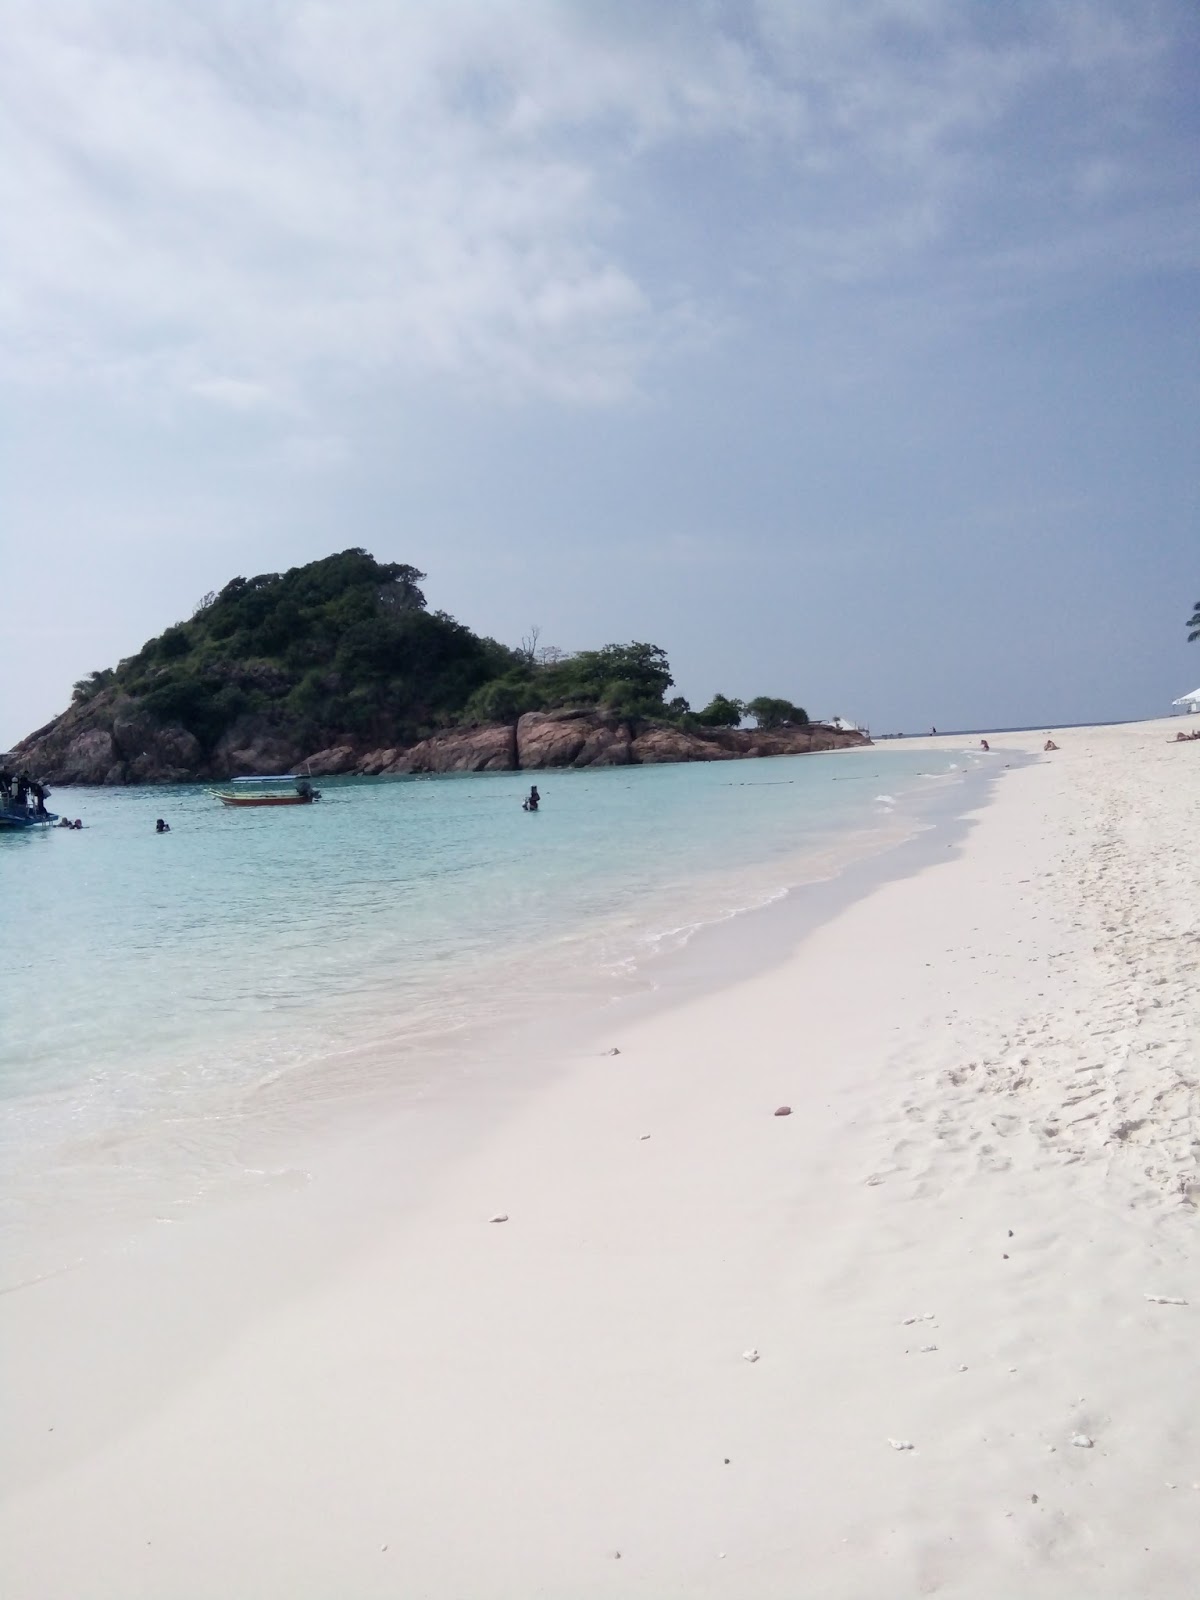 Pulau Redang